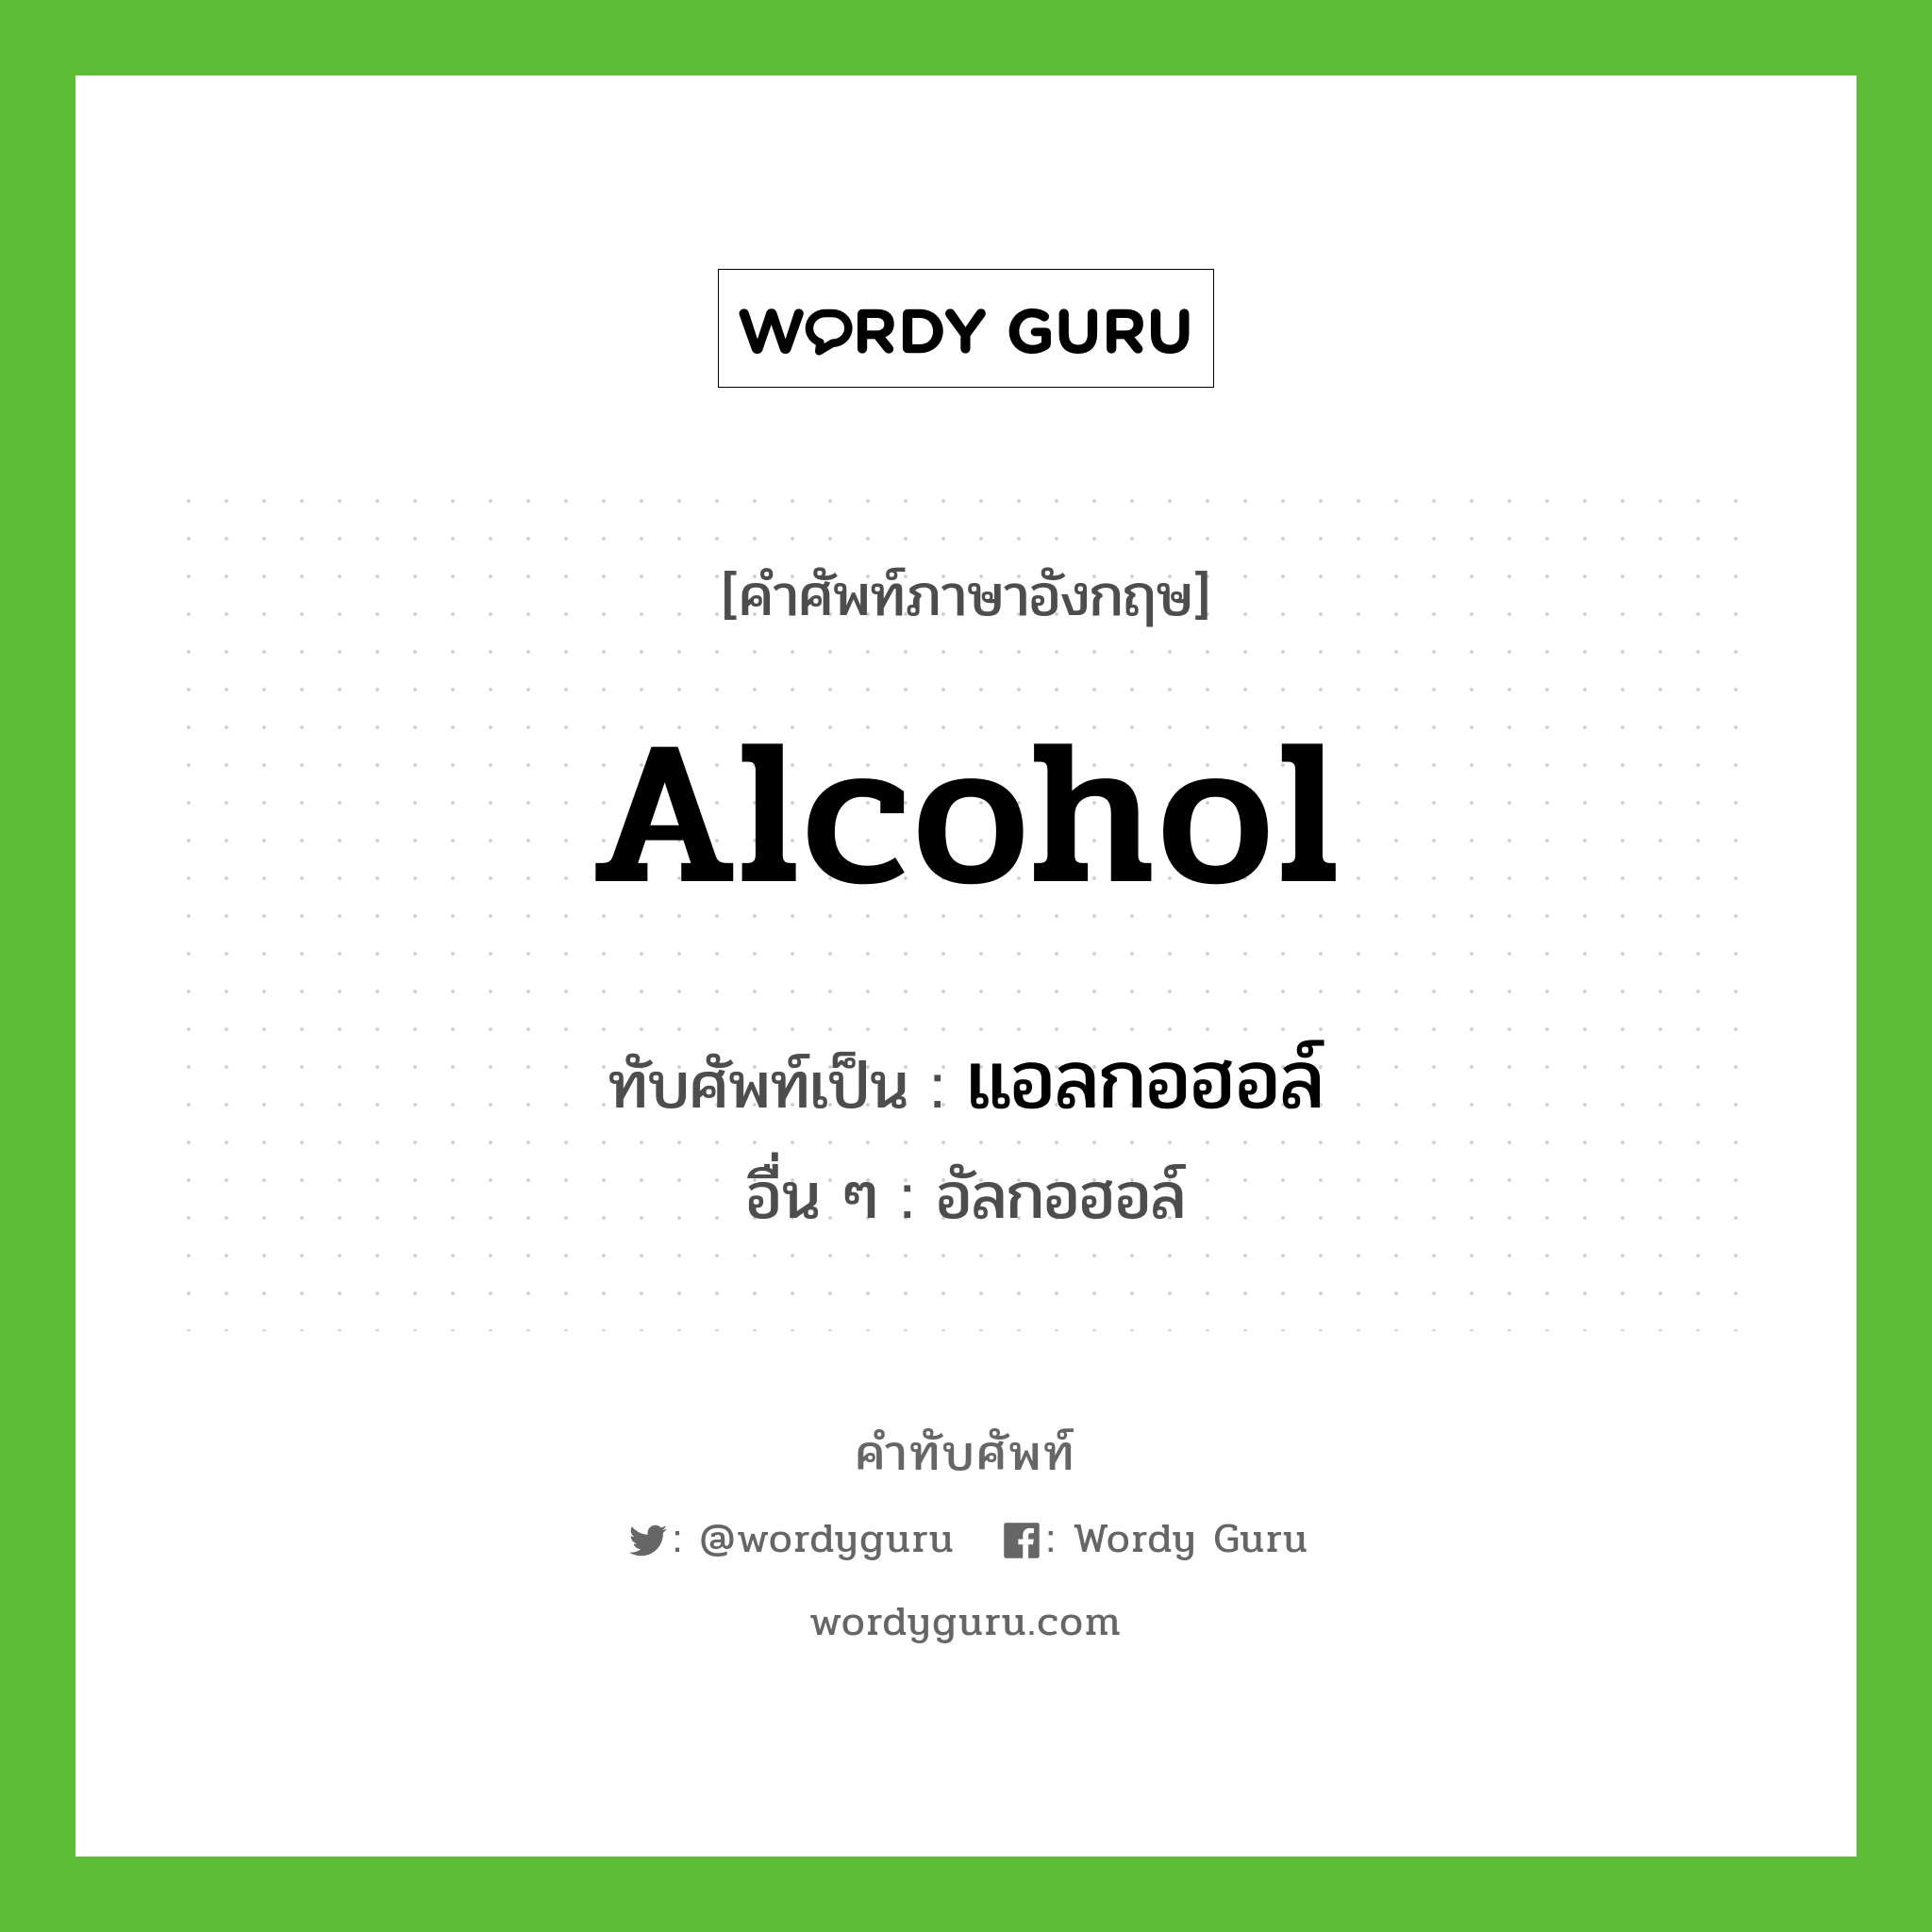 alcohol เขียนเป็นคำไทยว่าอะไร?, คำศัพท์ภาษาอังกฤษ alcohol ทับศัพท์เป็น แอลกอฮอล์ อื่น ๆ อัลกอฮอล์